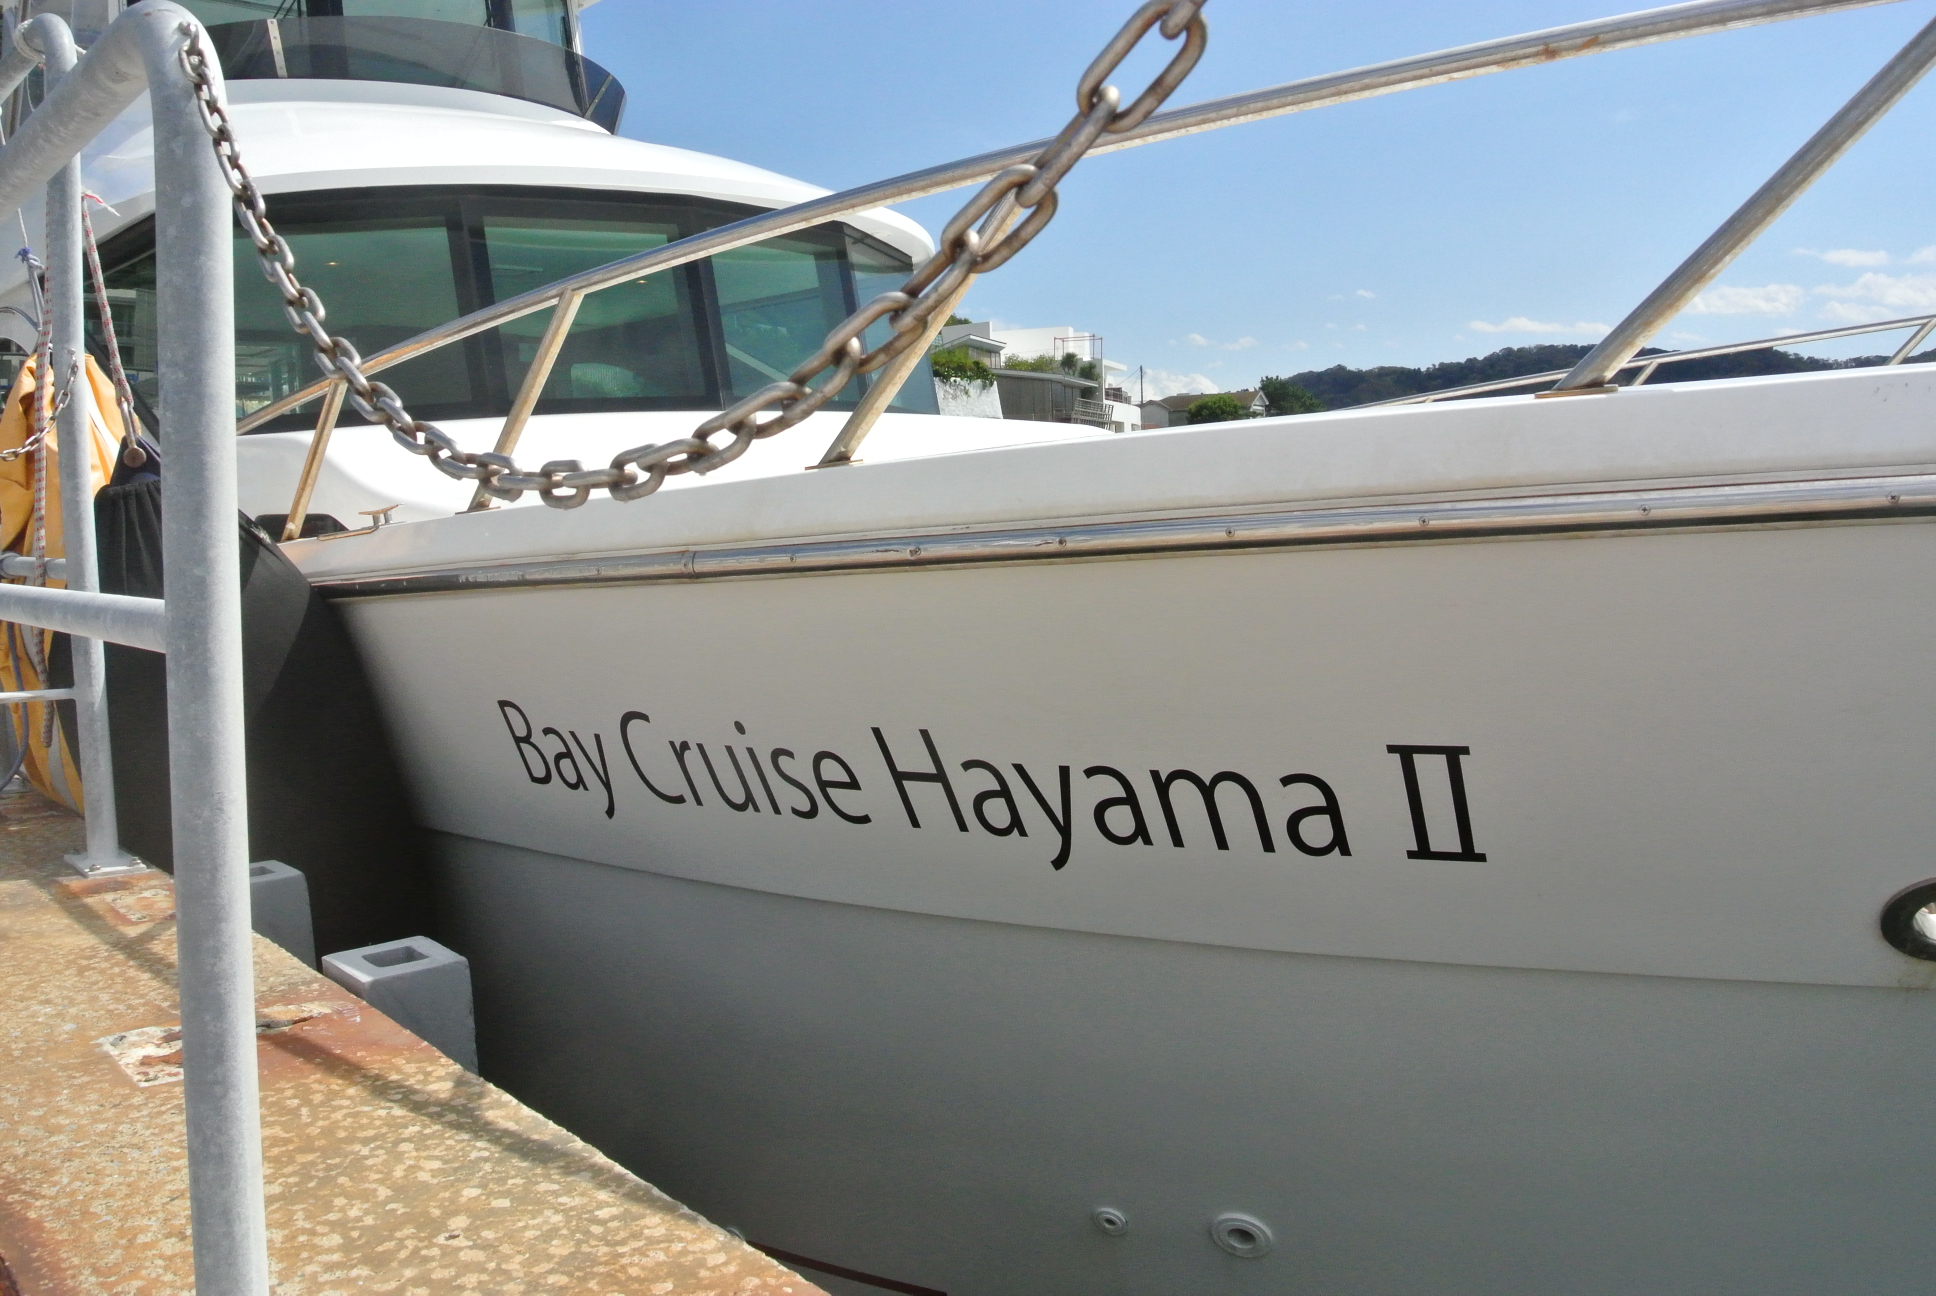 クルーズの船体にはBay Cruise Hayama Ⅱと書かれている。